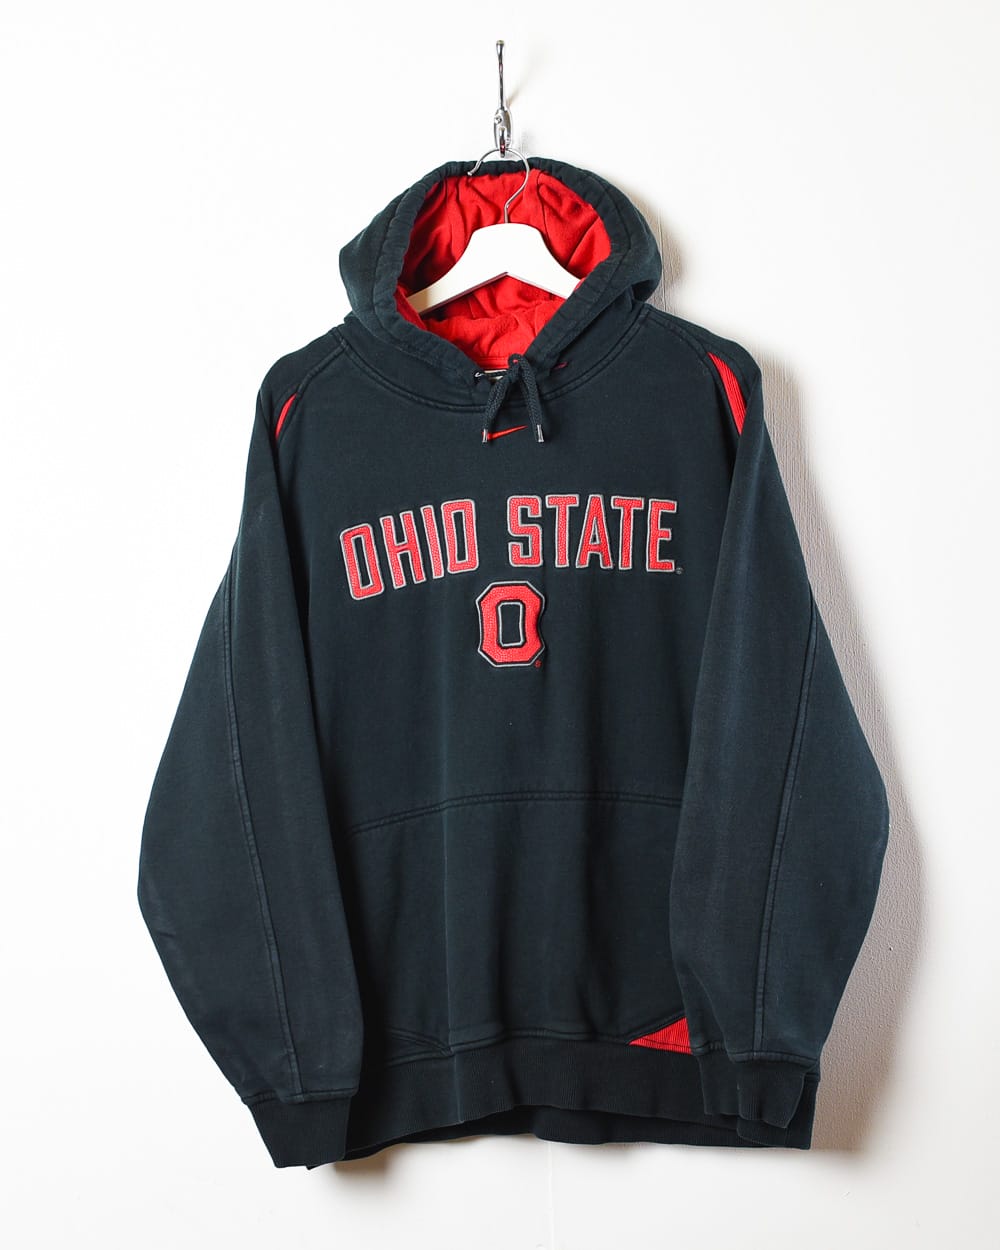 Black Nike Team Ohio State Hoodie - Medium